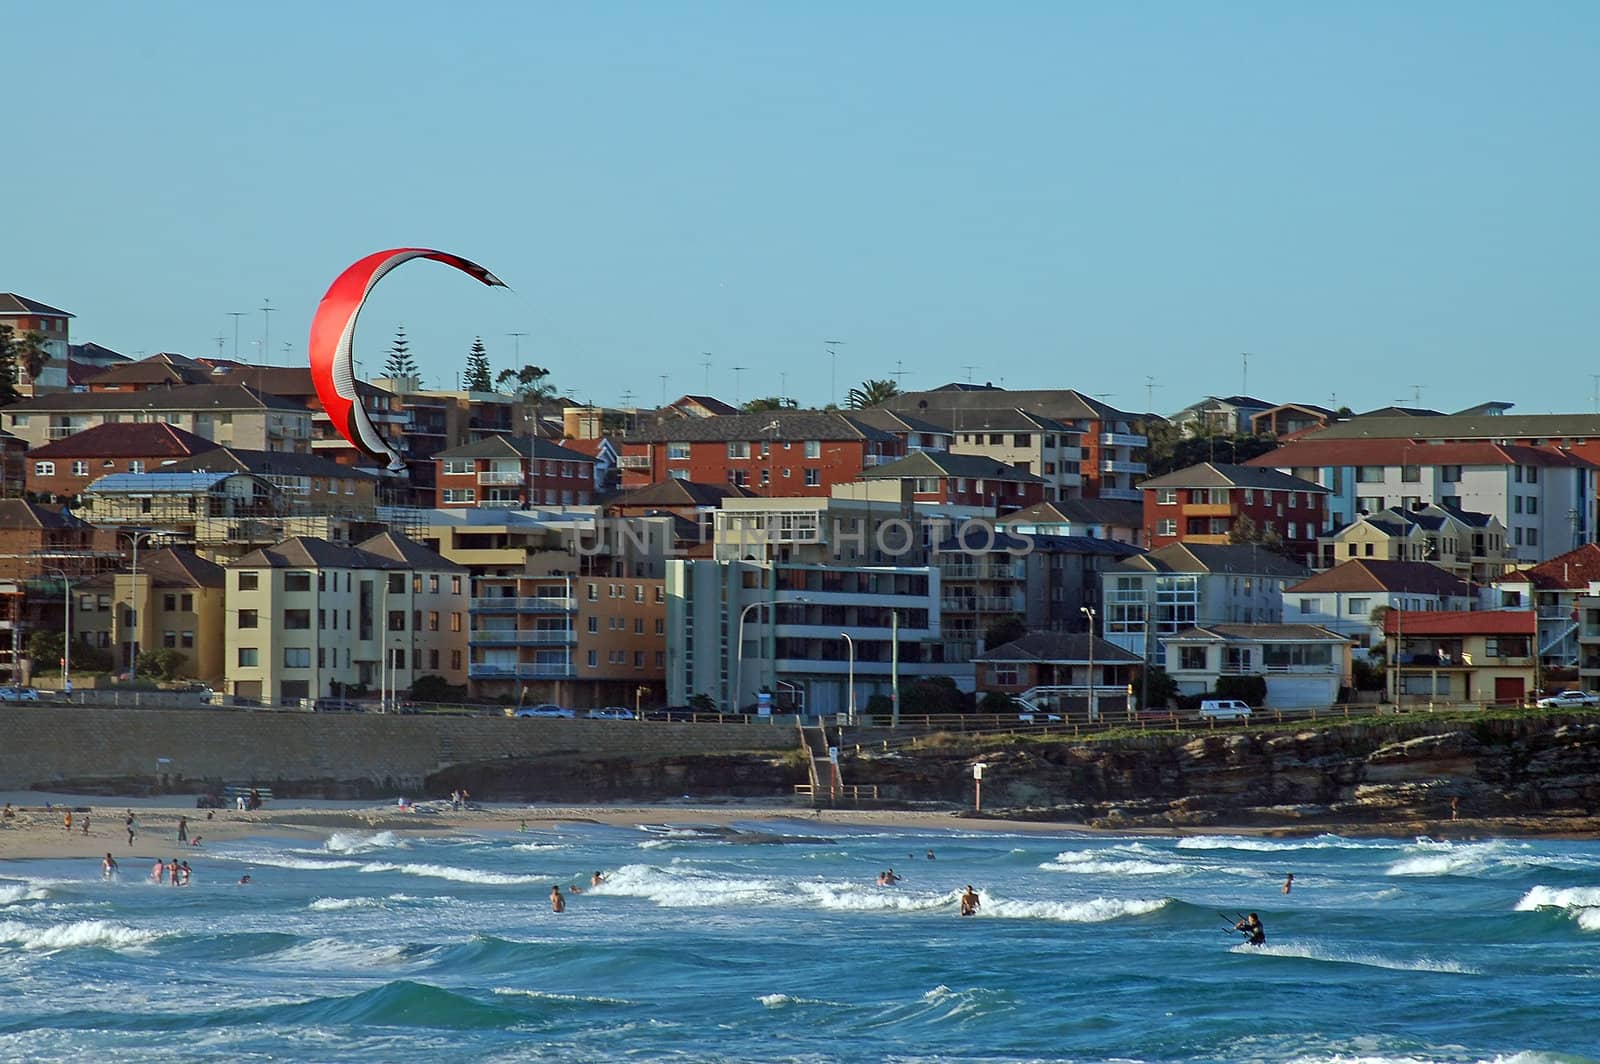 kite surfing by rorem